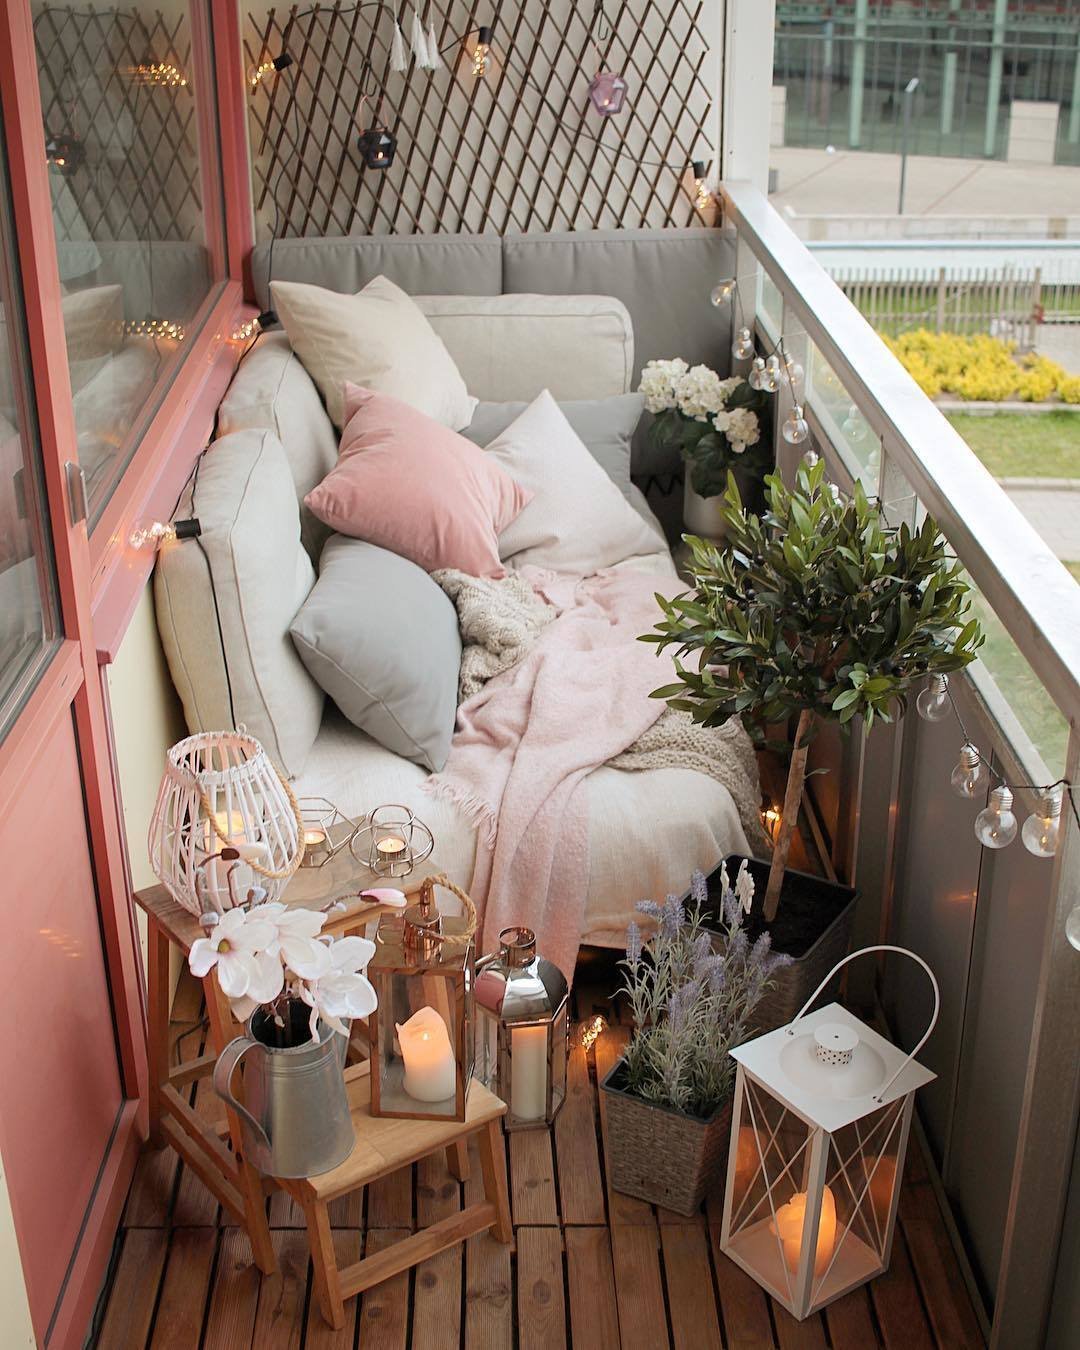 Как обустроить балкон летом: 7 идей балкон,идеи для дома,интерьер и дизайн